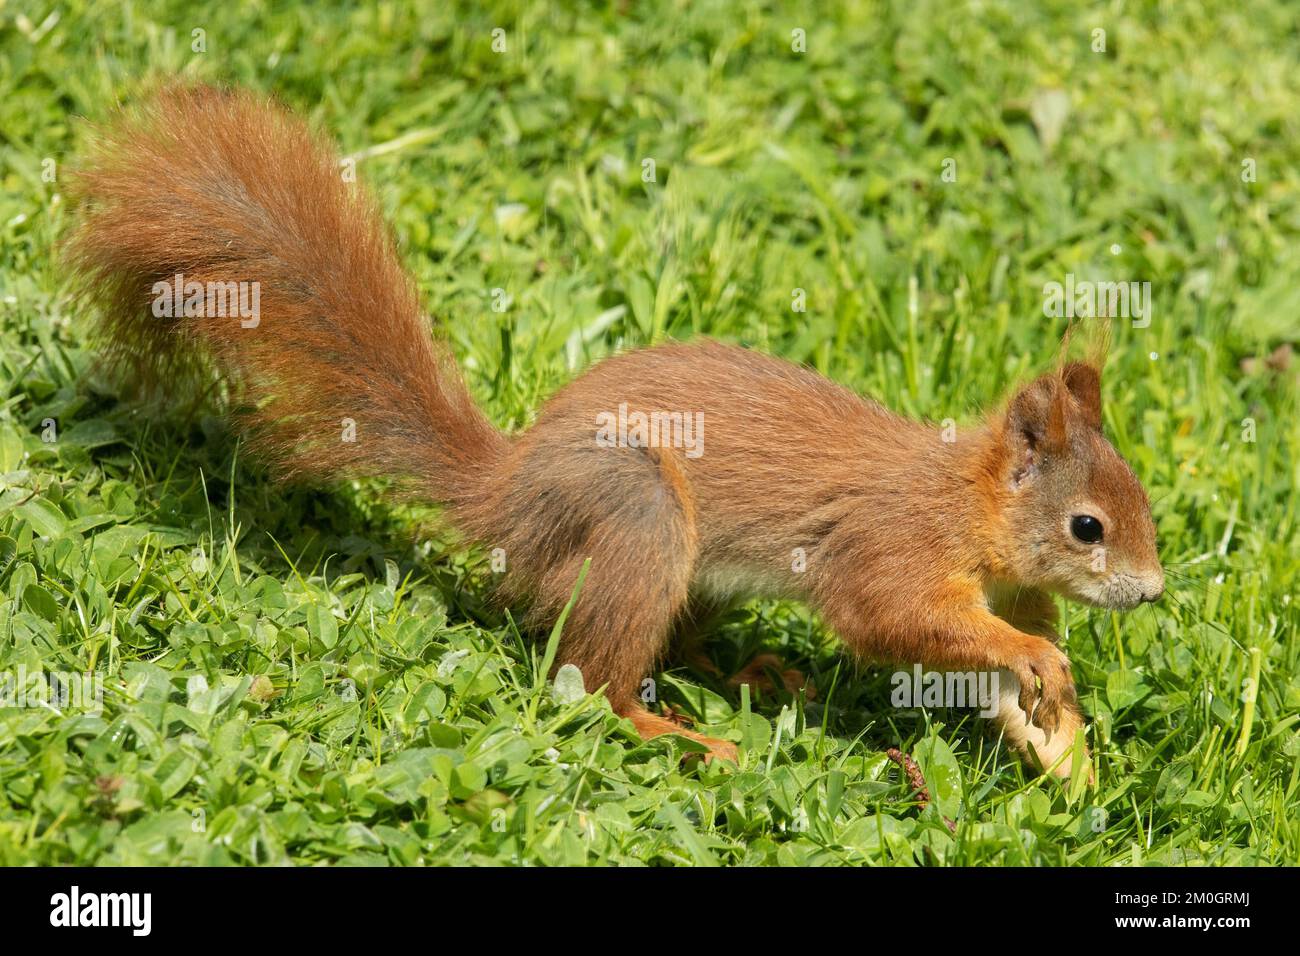 Das Eichhörnchen läuft im grünen Gras und sieht genau aus Stockfoto